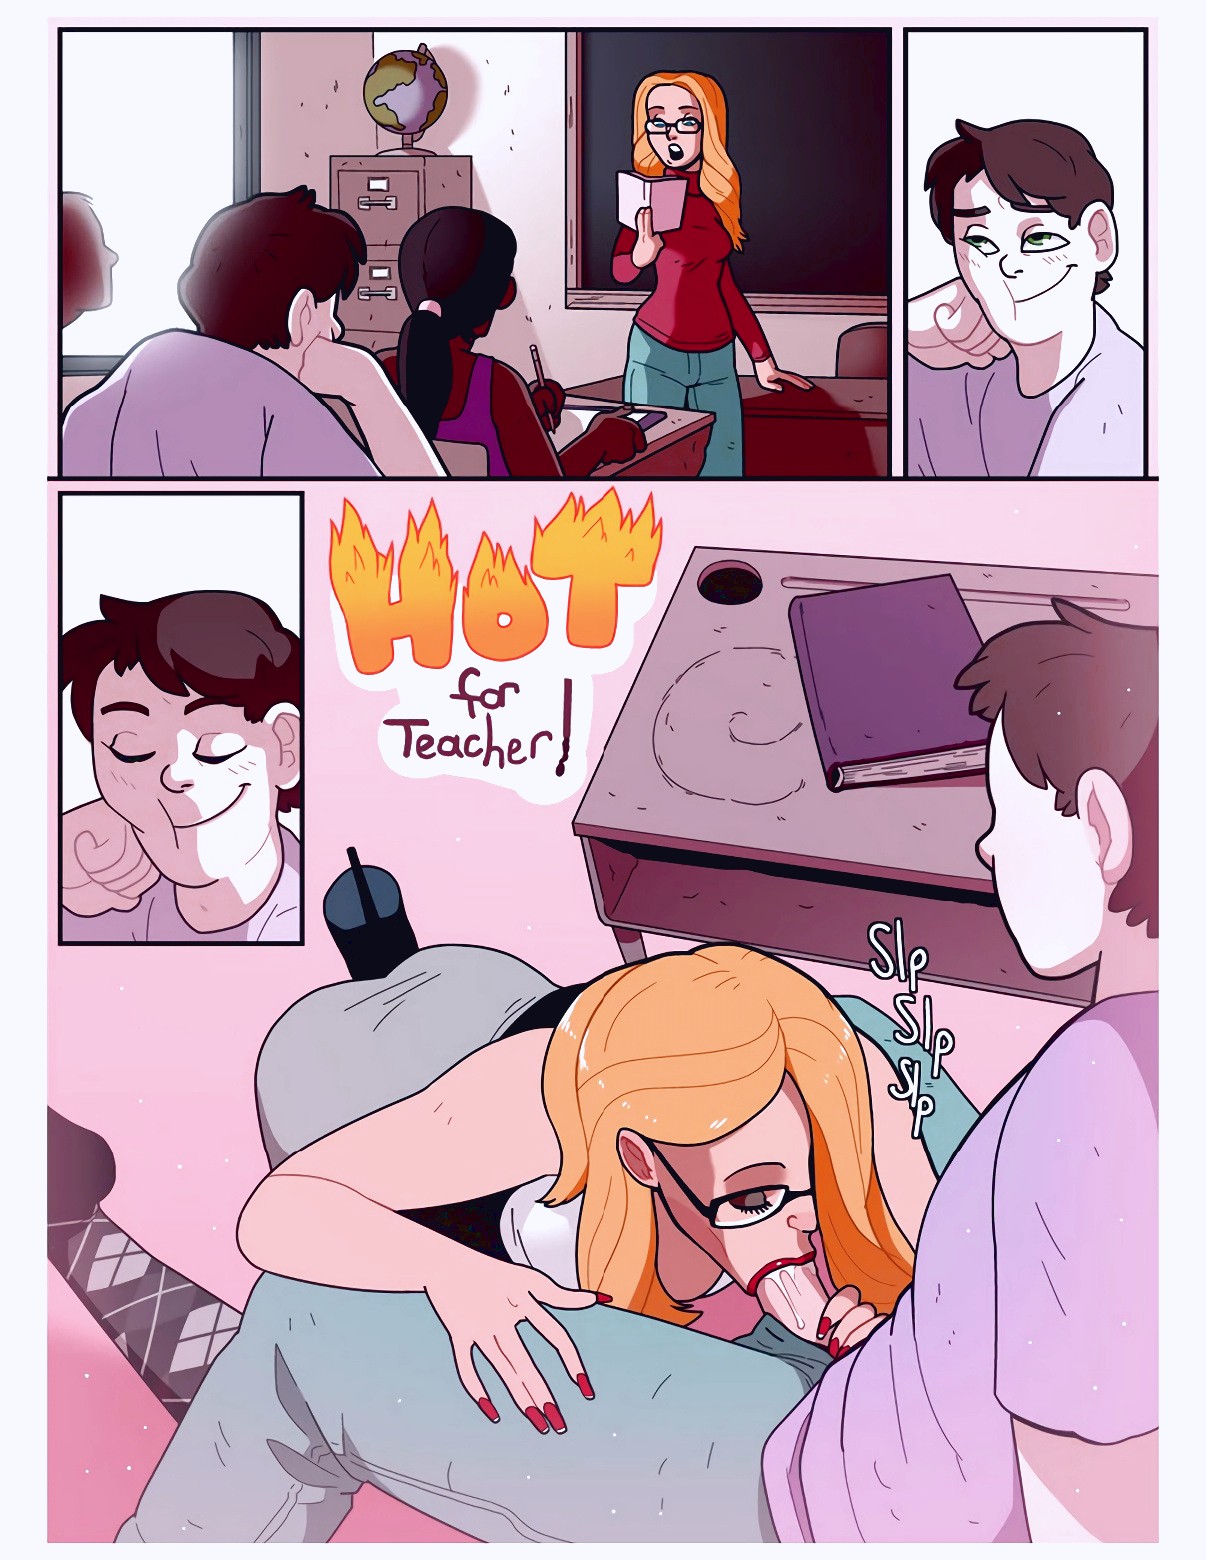 Hot teacher porn comics